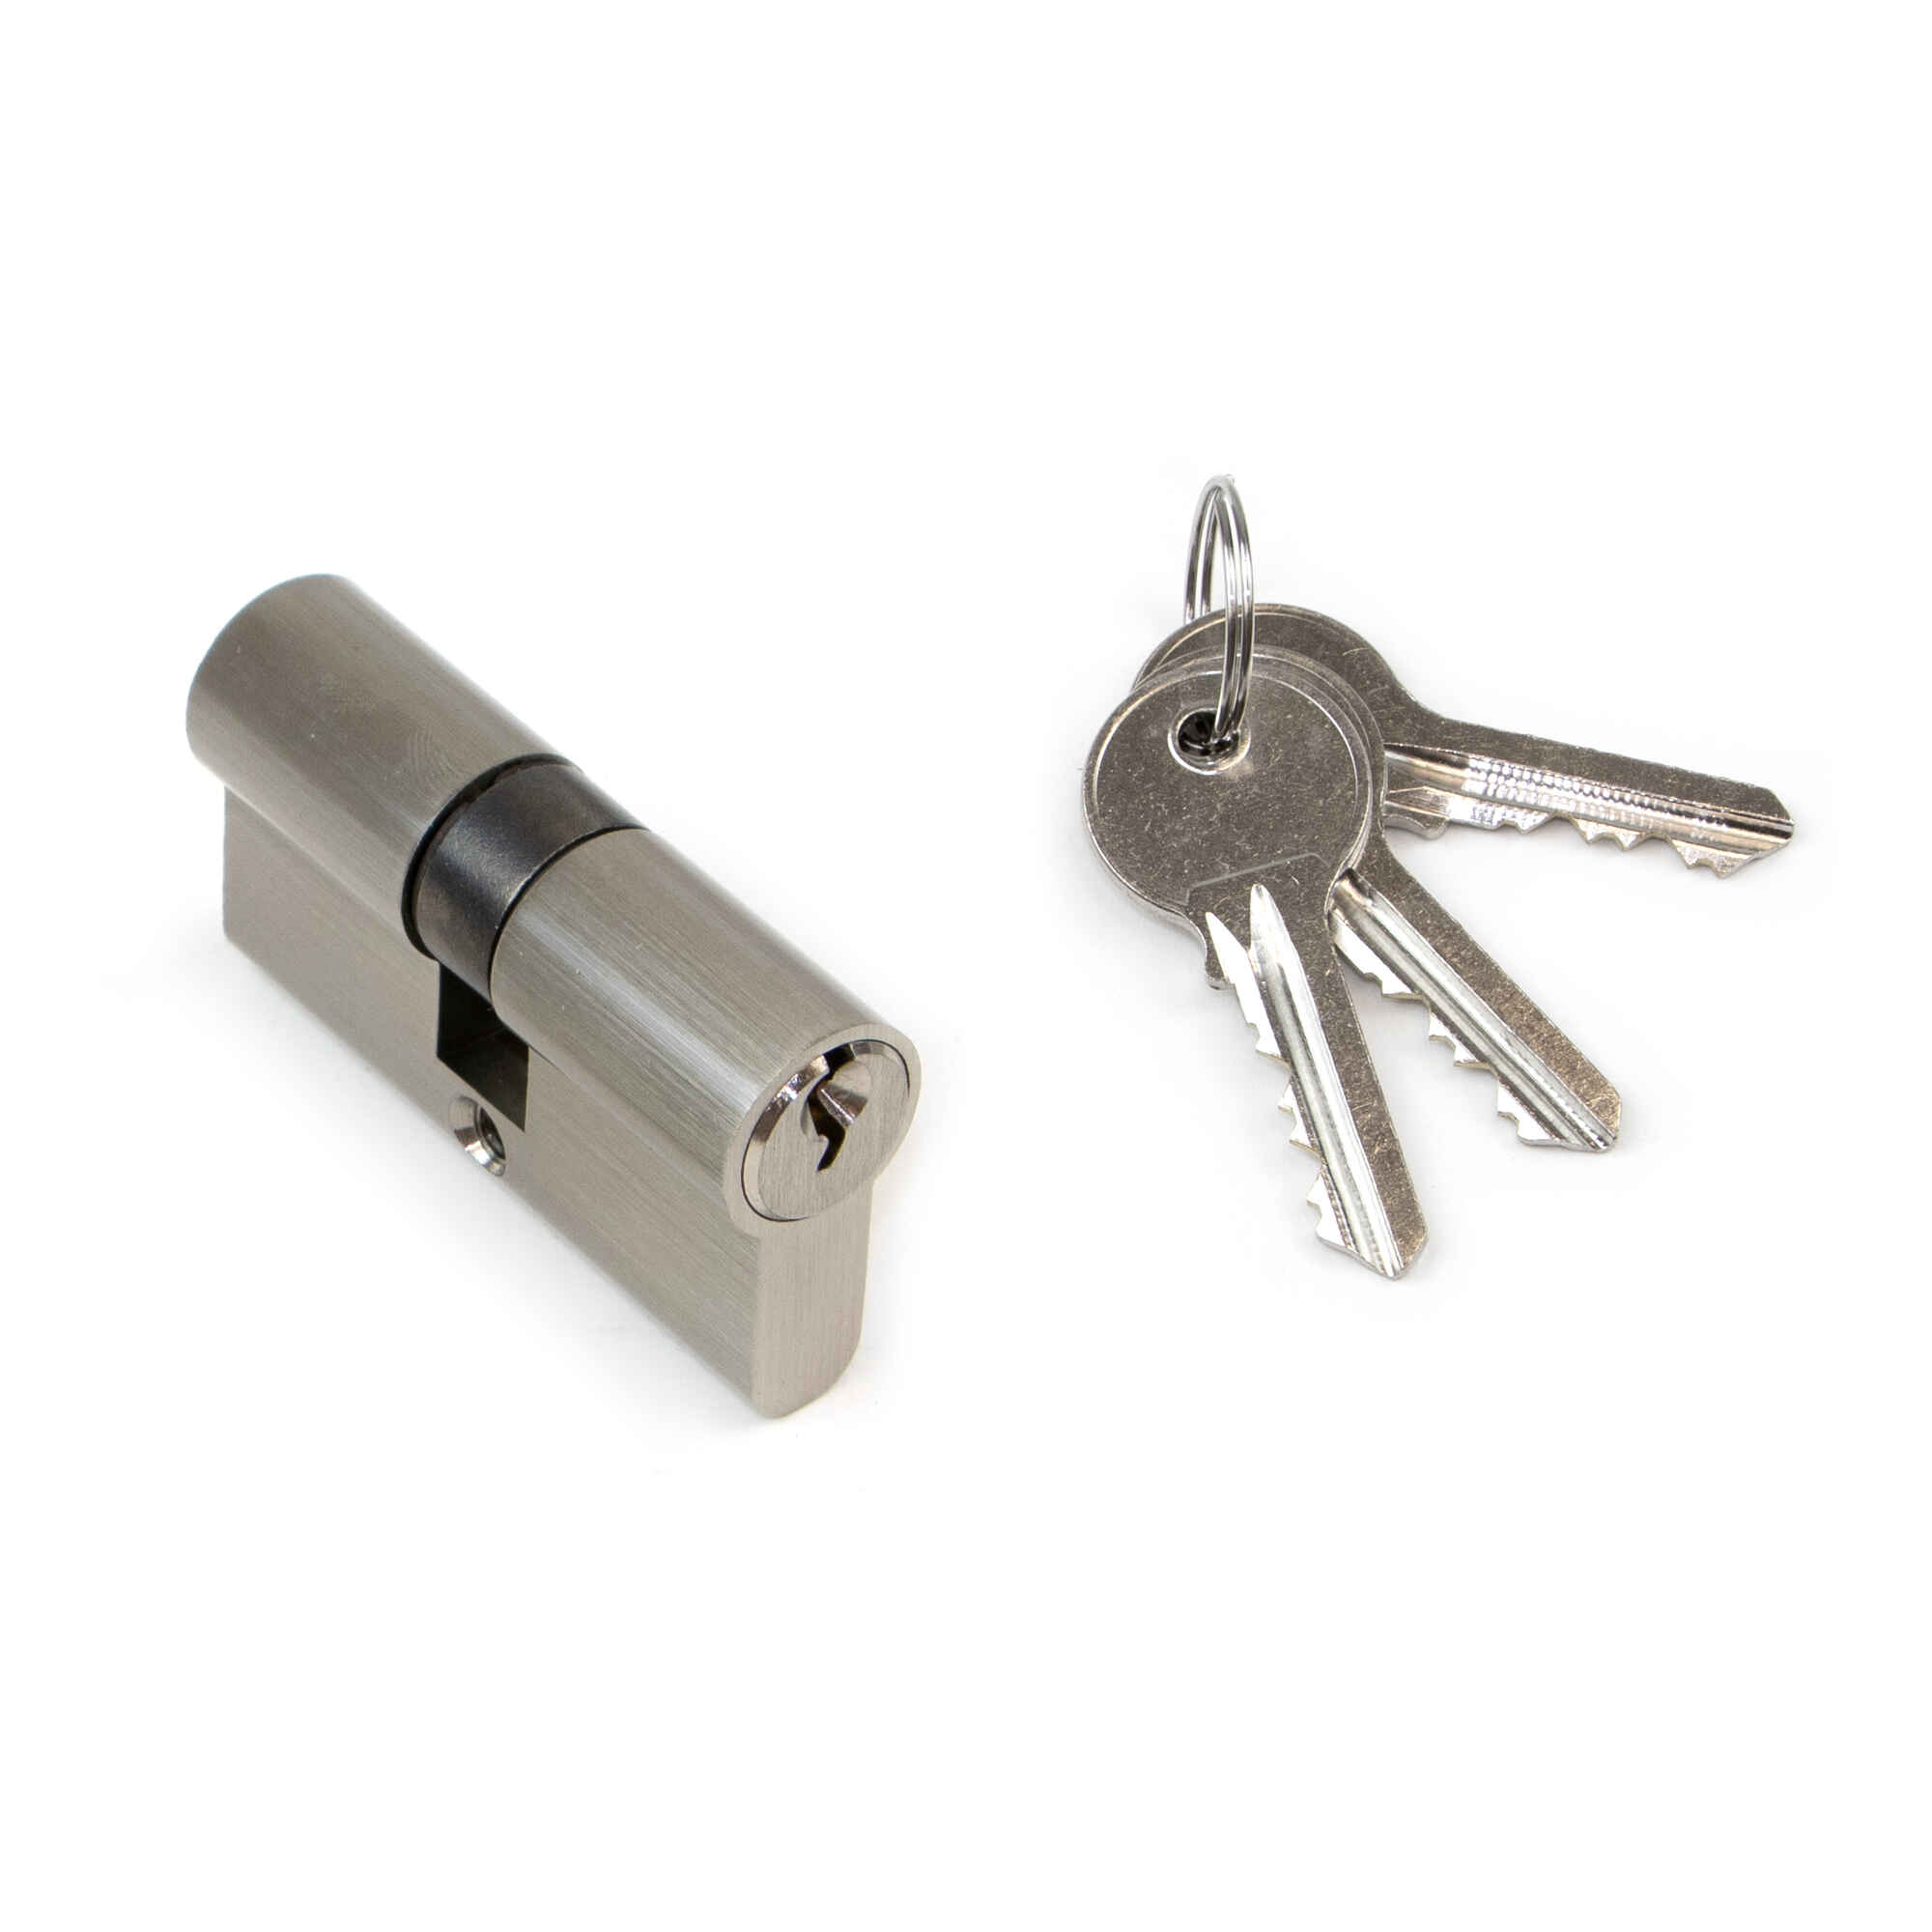 Cilindro cerradura tipo pera para puertas, 30 x 30 mm, embrague simple, leva larga, con 5 llaves, aluminio, níquel satinado, 5 sets.